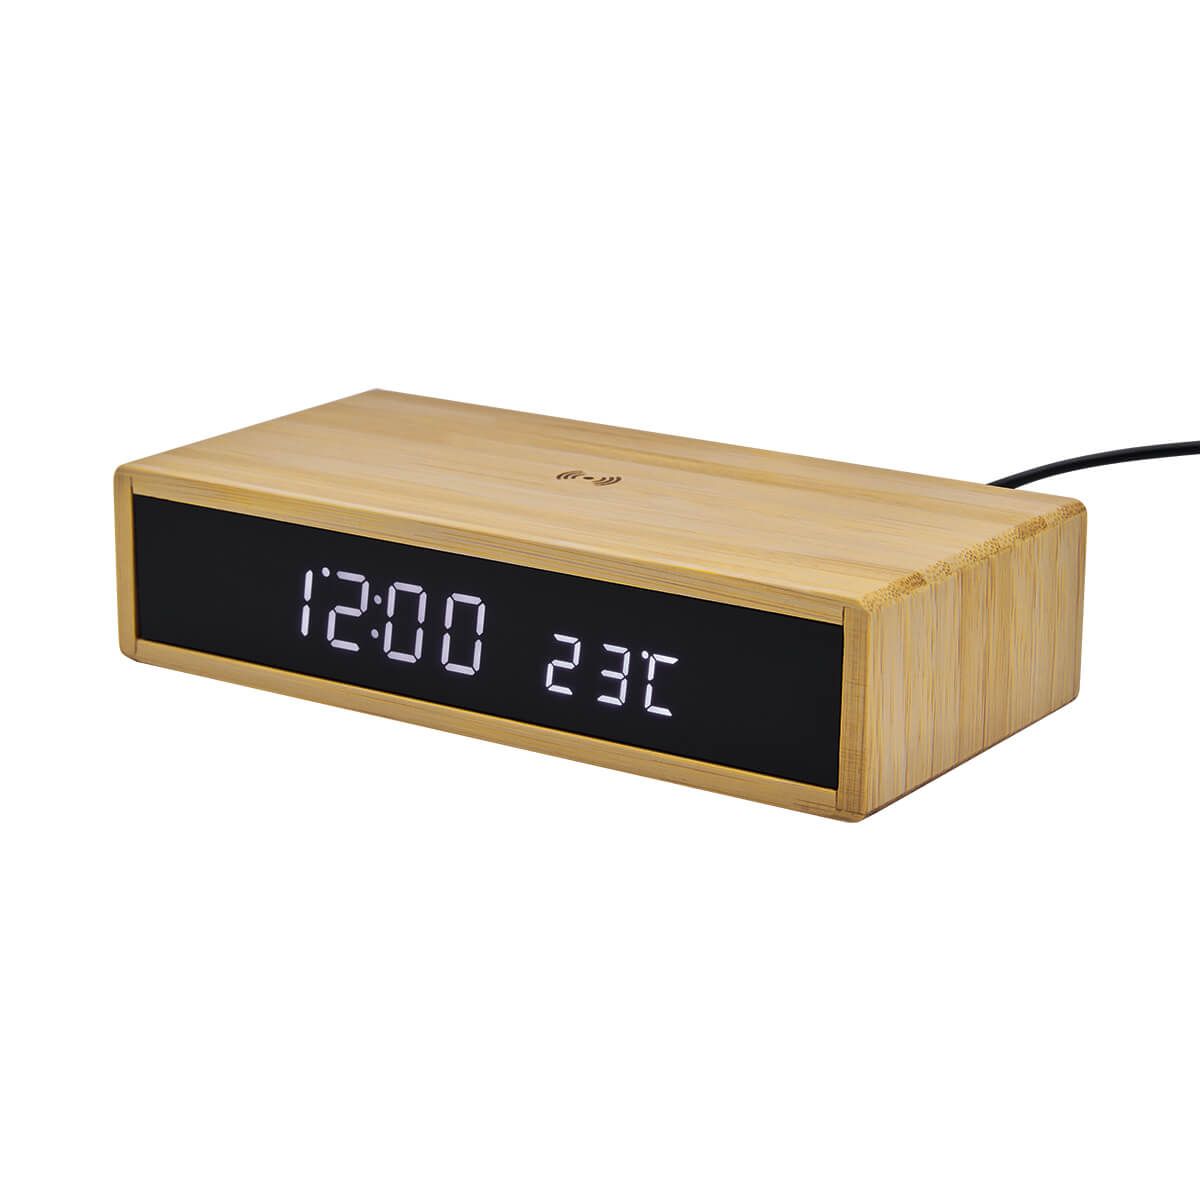 MK401, Reloj digital con carga inalámbrica de 10W. Display indicador de hora y temperatura. Tres modos de display para elegir y 4 niveles diferentes de brillo. Función de alarma. Carga por medio de cable tipo C incluido (1m de largo).